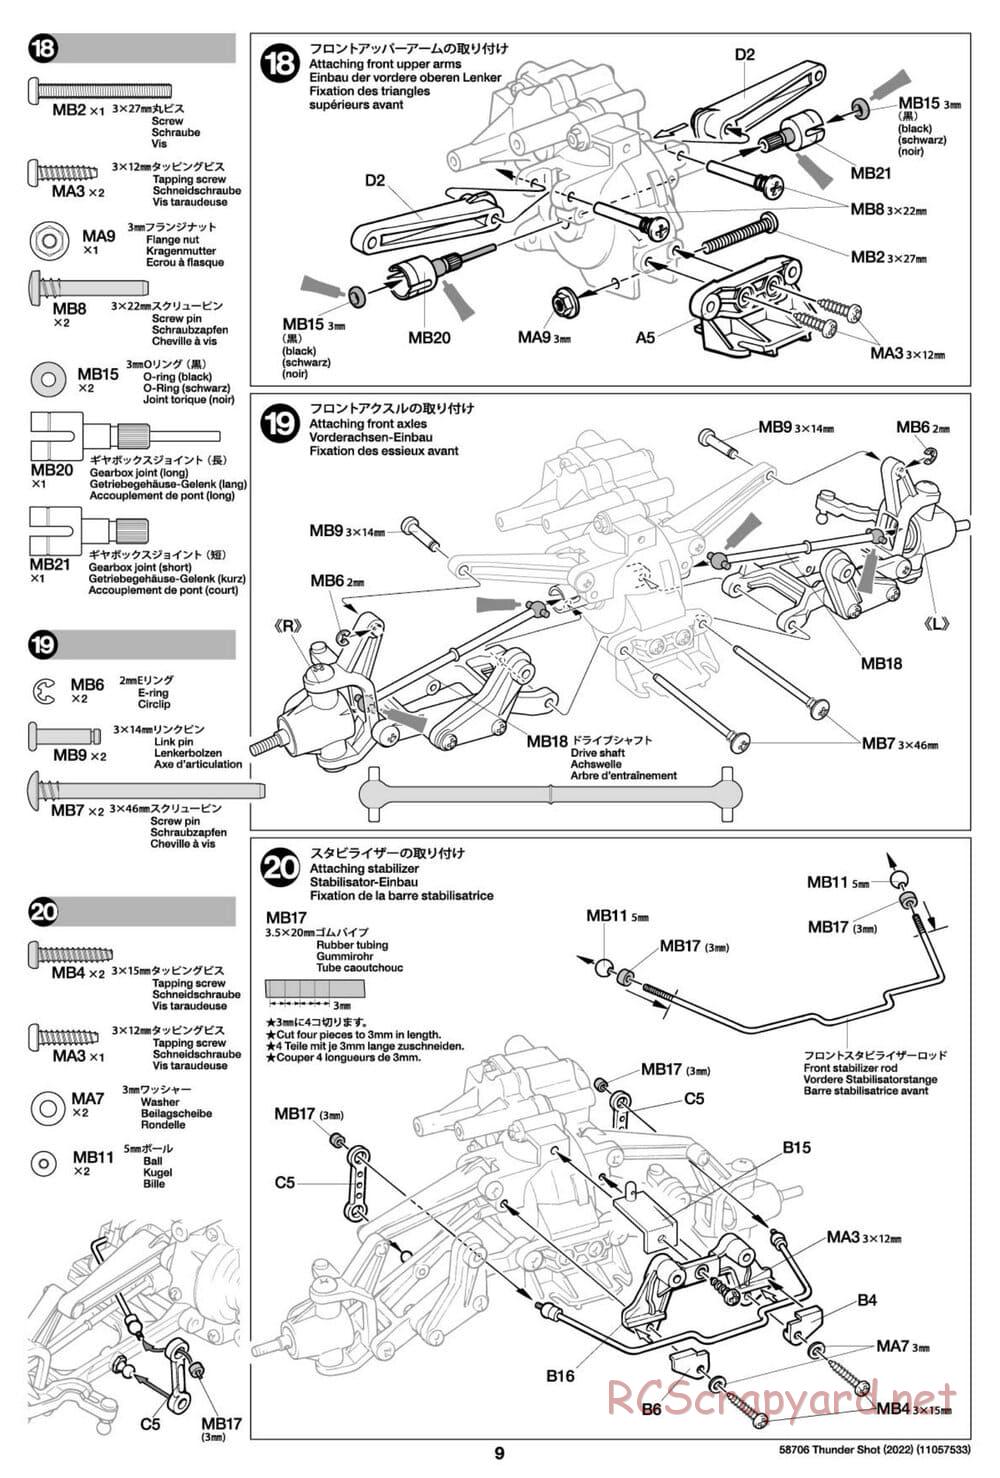 Tamiya - Thunder Shot (2022) - TS1/TS2 Chassis - Manual - Page 9